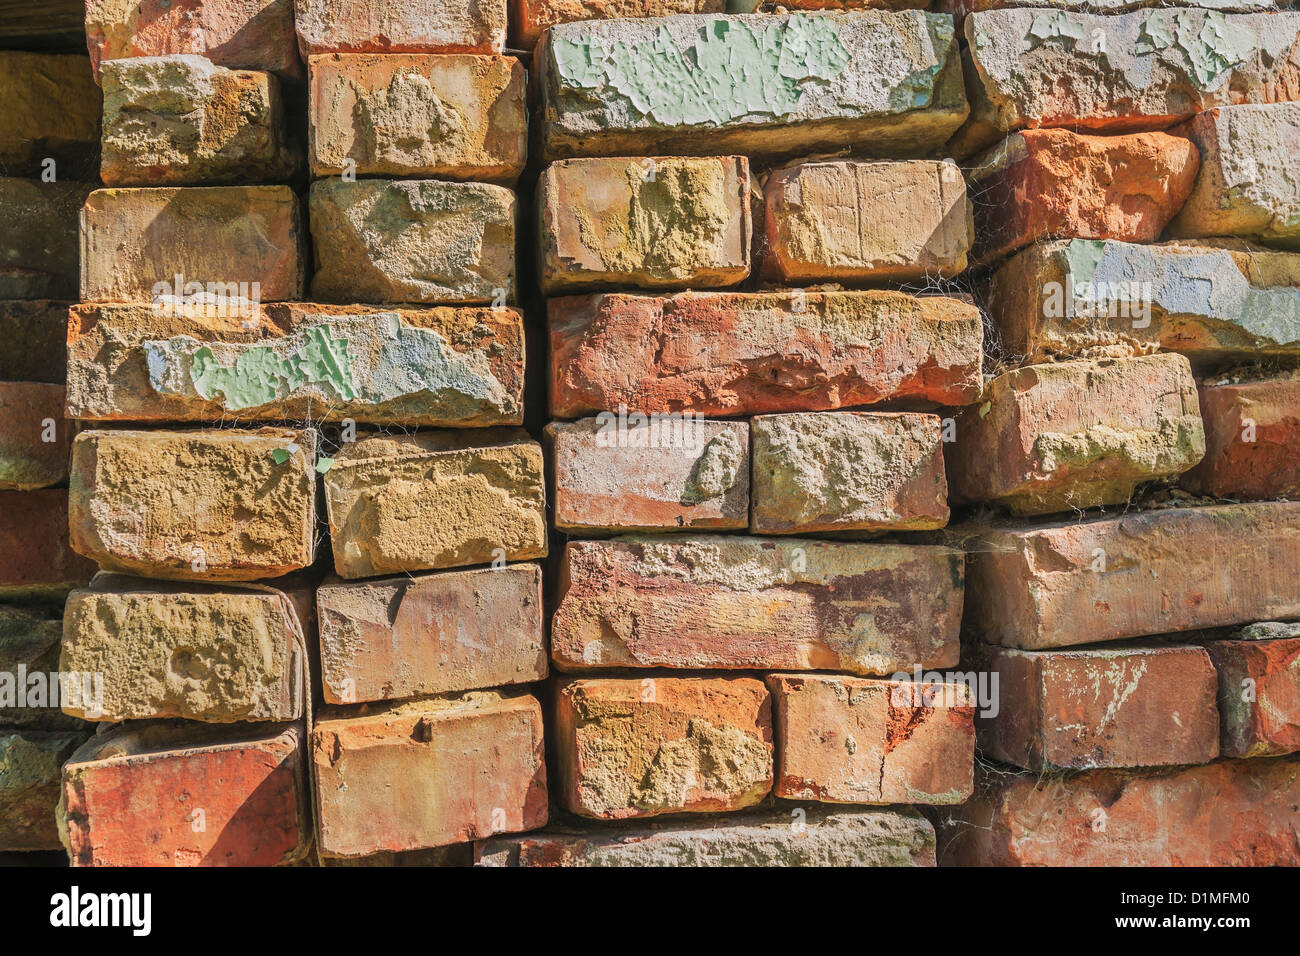 Viele Ziegelsteine übereinander gestapelt | Many bricks stacked Stock Photo